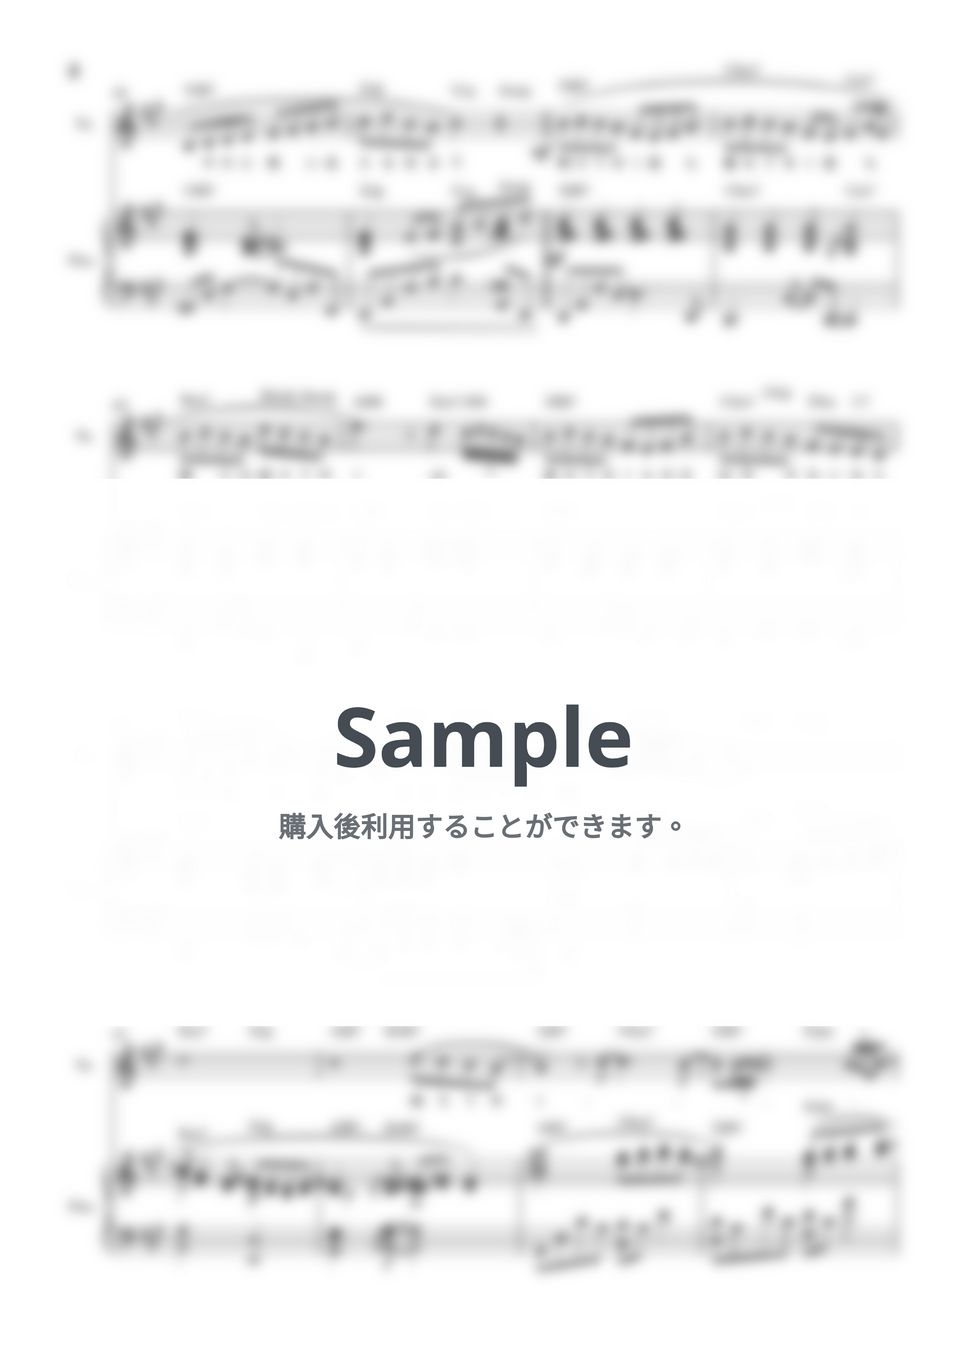 藤井風 - 満ちてゆく 弾き語り(piano&vocal楽譜) by KEIKO EBI